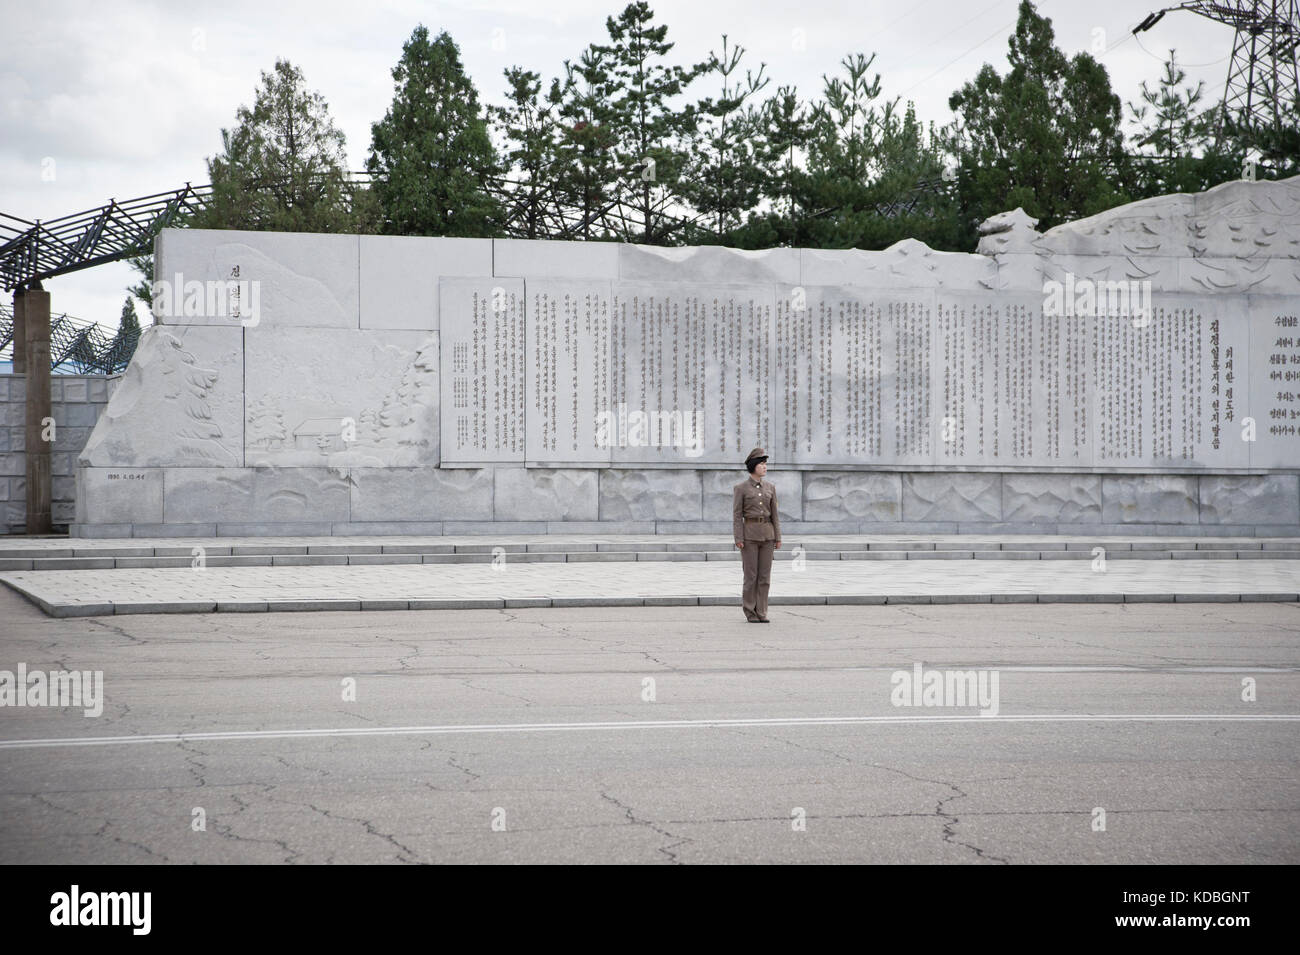 Le jour de la fête nationale, tous les Nord coréens ont l'obligation de saluer les immenses statues des leaders,  Pyongyang le 8 octobre 2012. The day Stock Photo